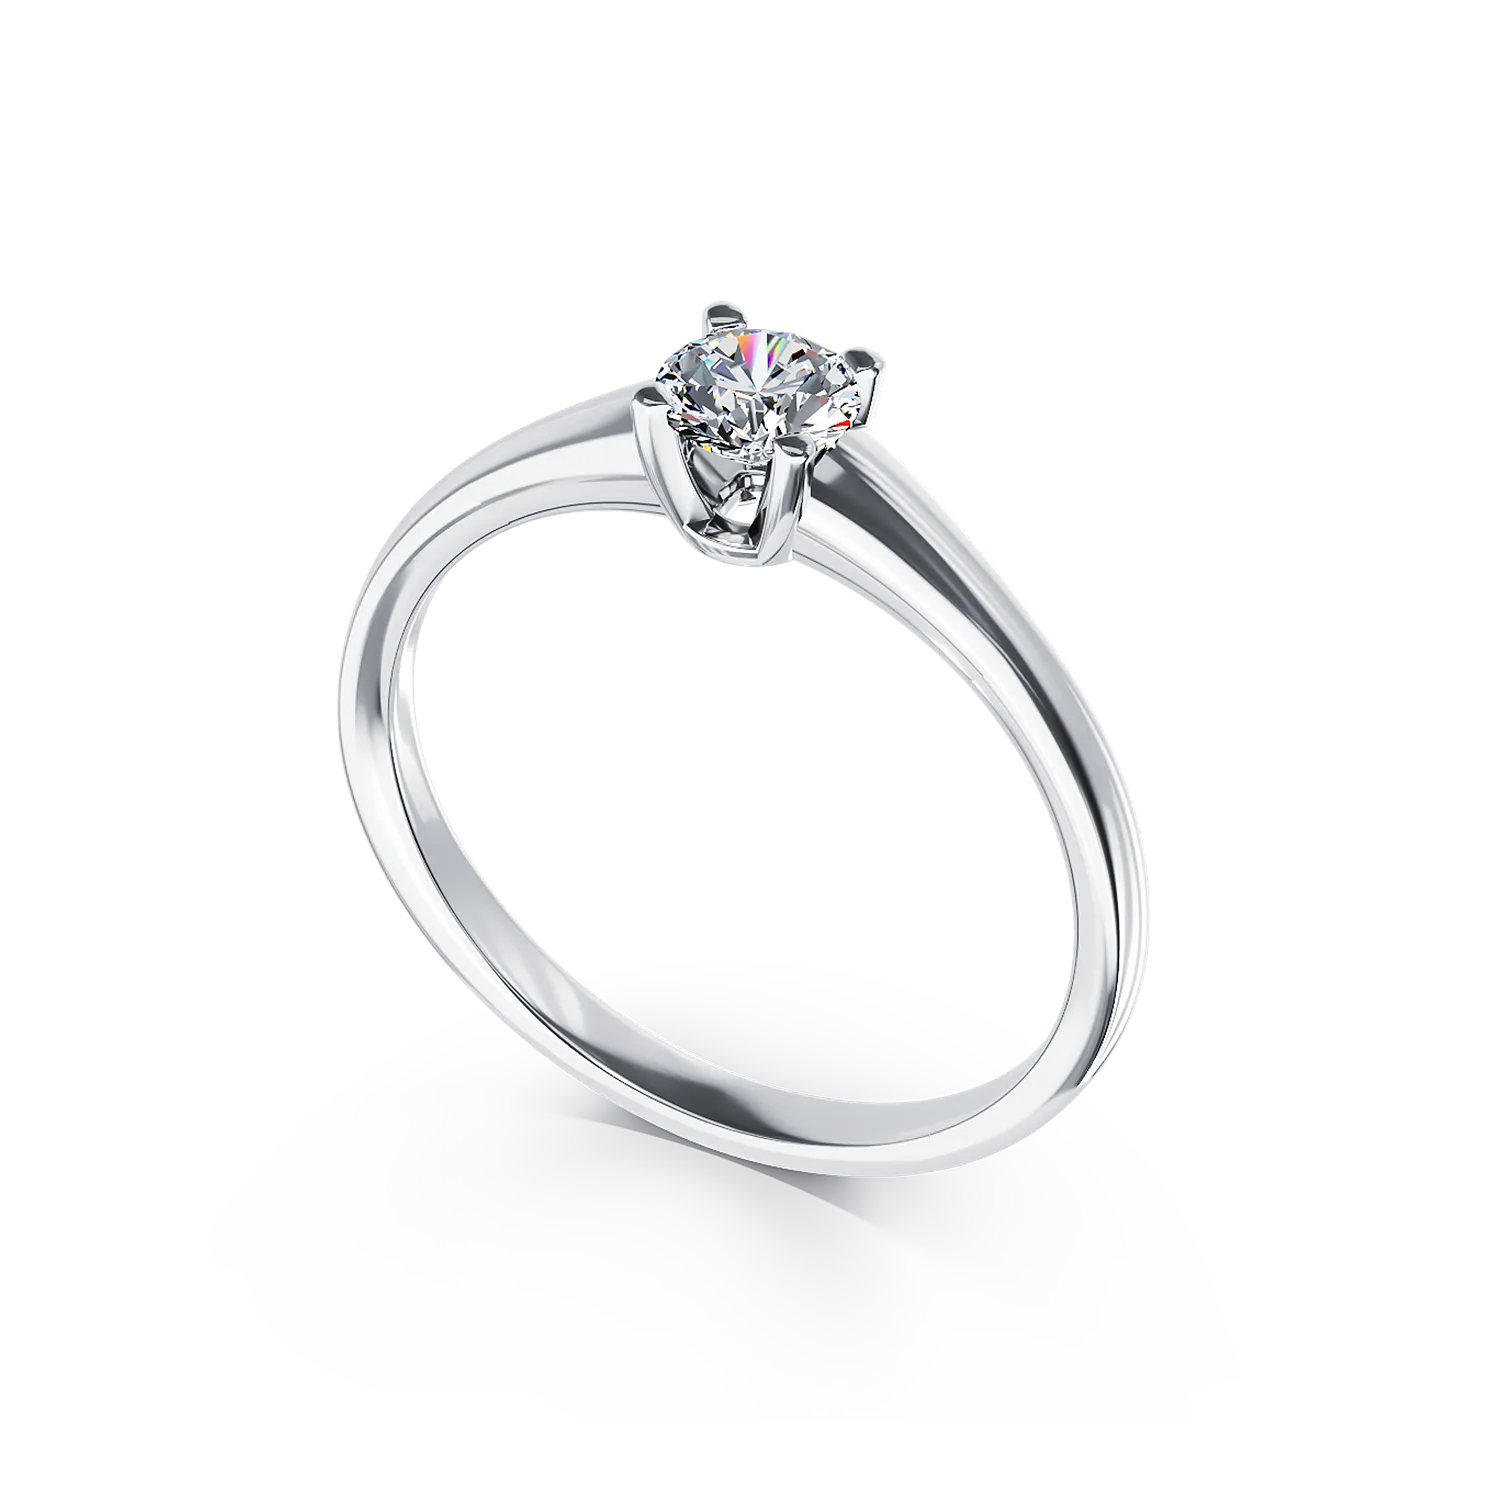 Eljegyzési gyűrű 18K-os fehér aranyból egy 0,4ct solitaire gyémánttal